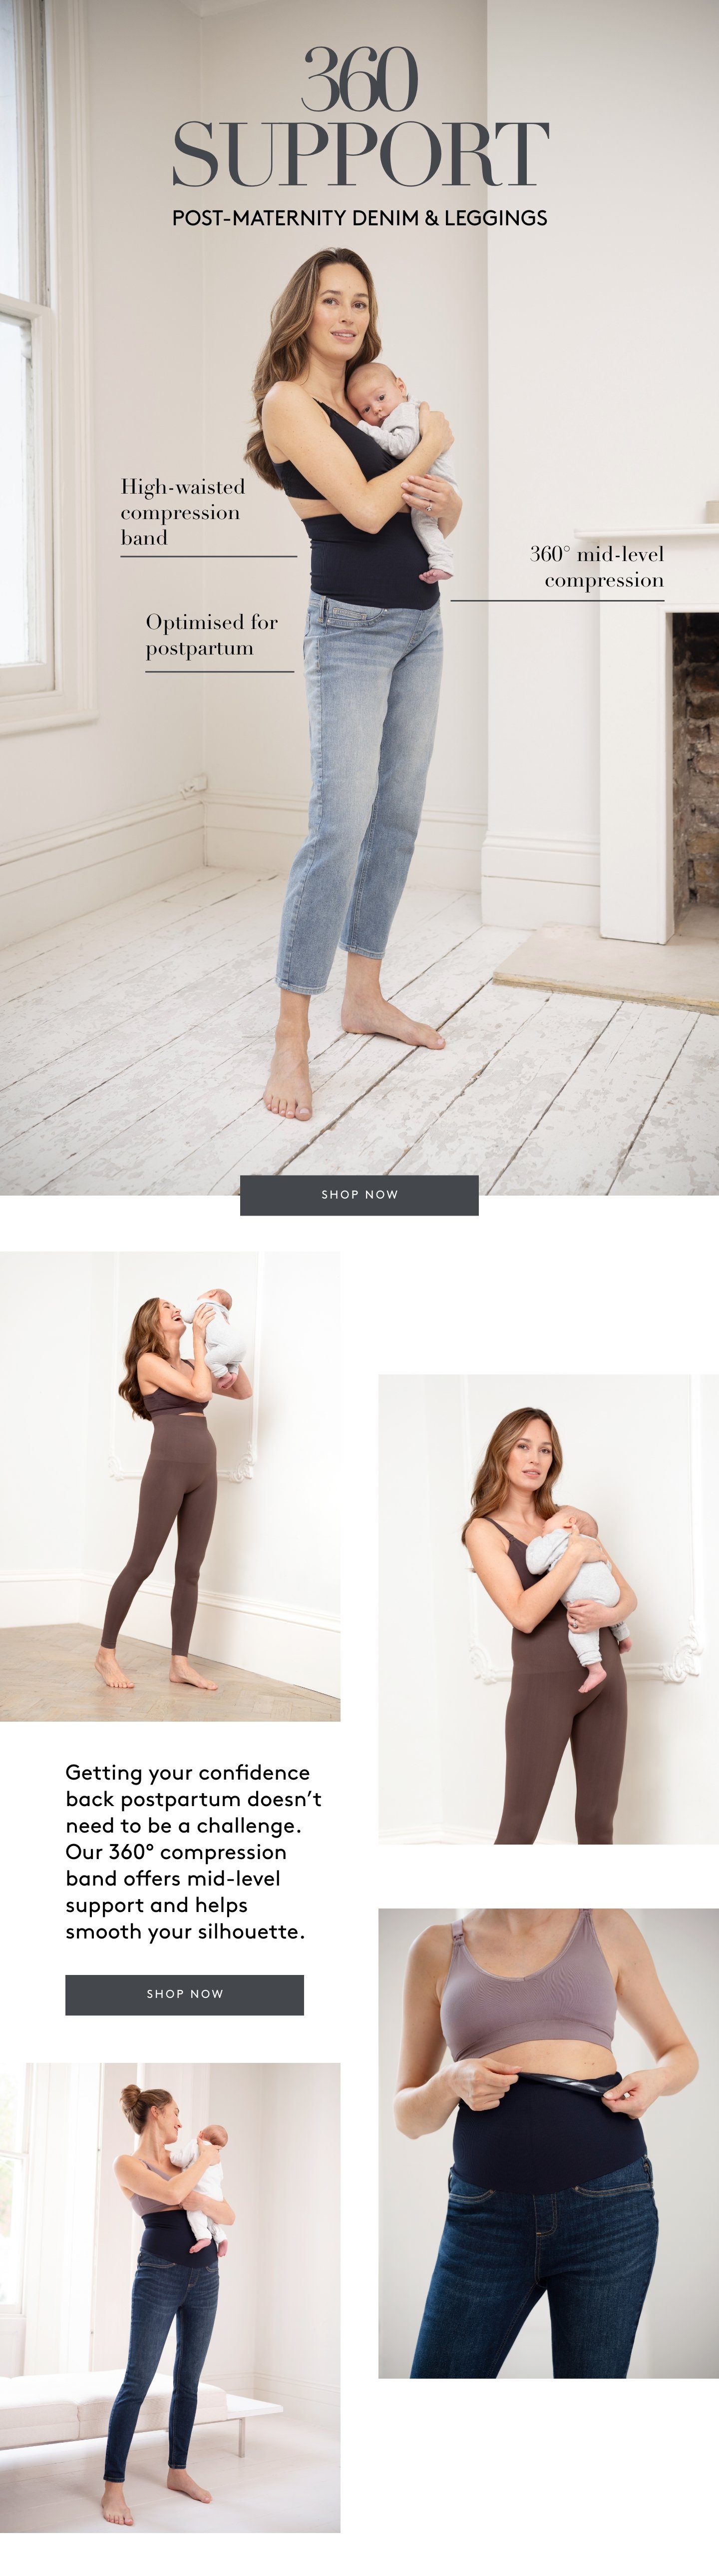 Denim & leggings optimised for postpartum